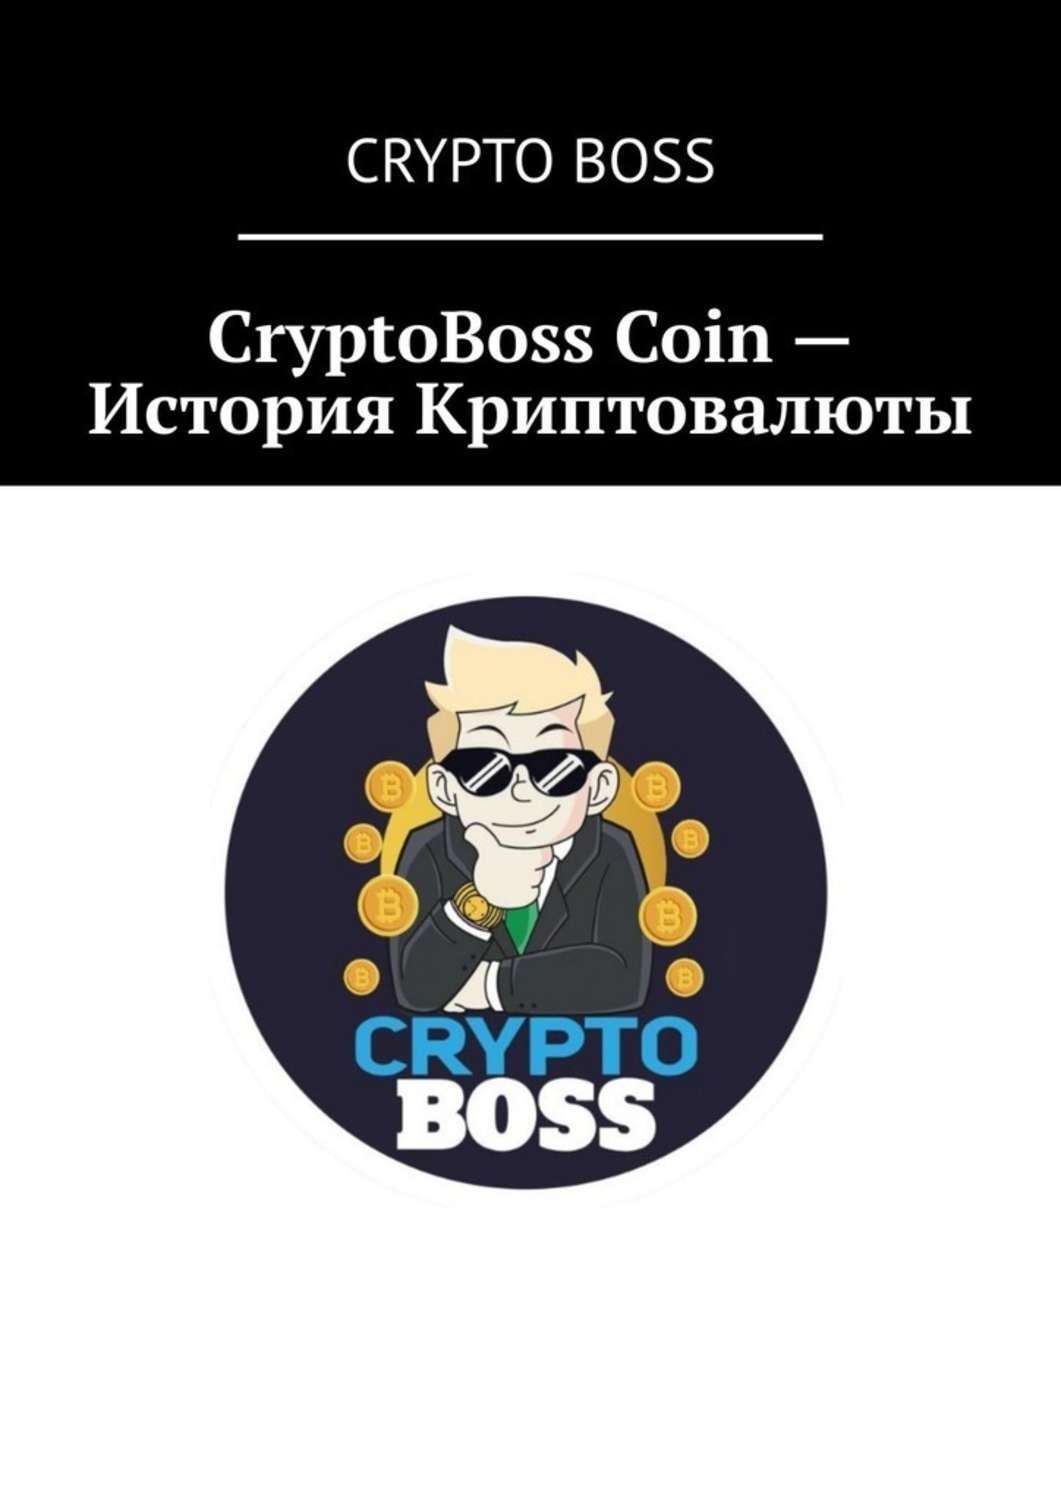 Криптобосс регистрация cryptoboss casino. CRYPTOBOSS. Crypto Boss. Крипто книга. Фото крипто бос.